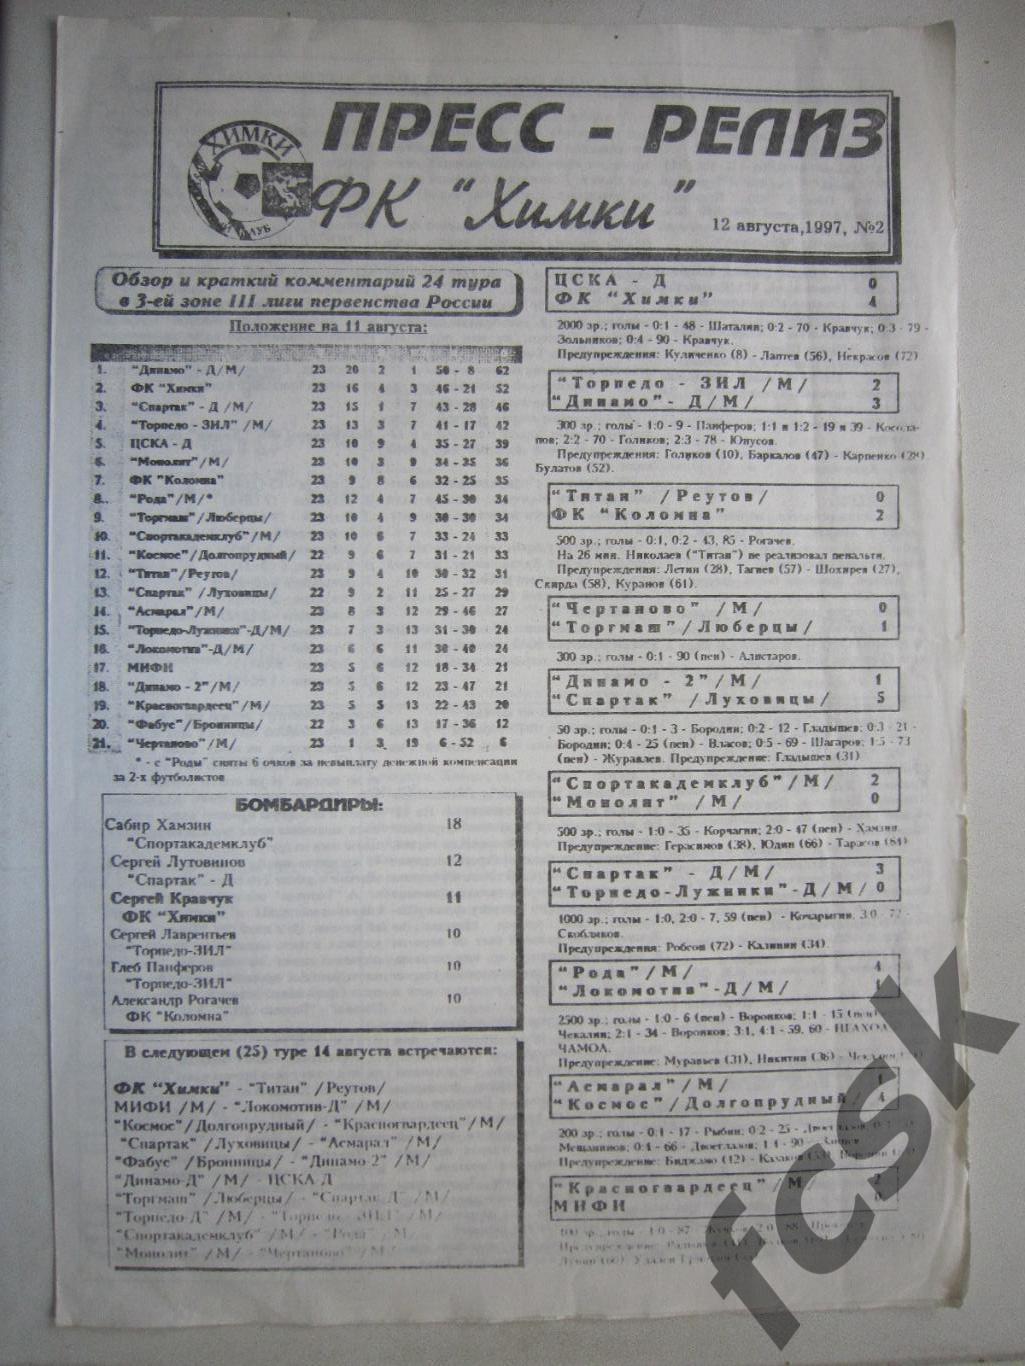 Пресс-релиз ФК Химки № 2 12.08.1997 (Е) ЦСКА Торпедо-ЗИЛ